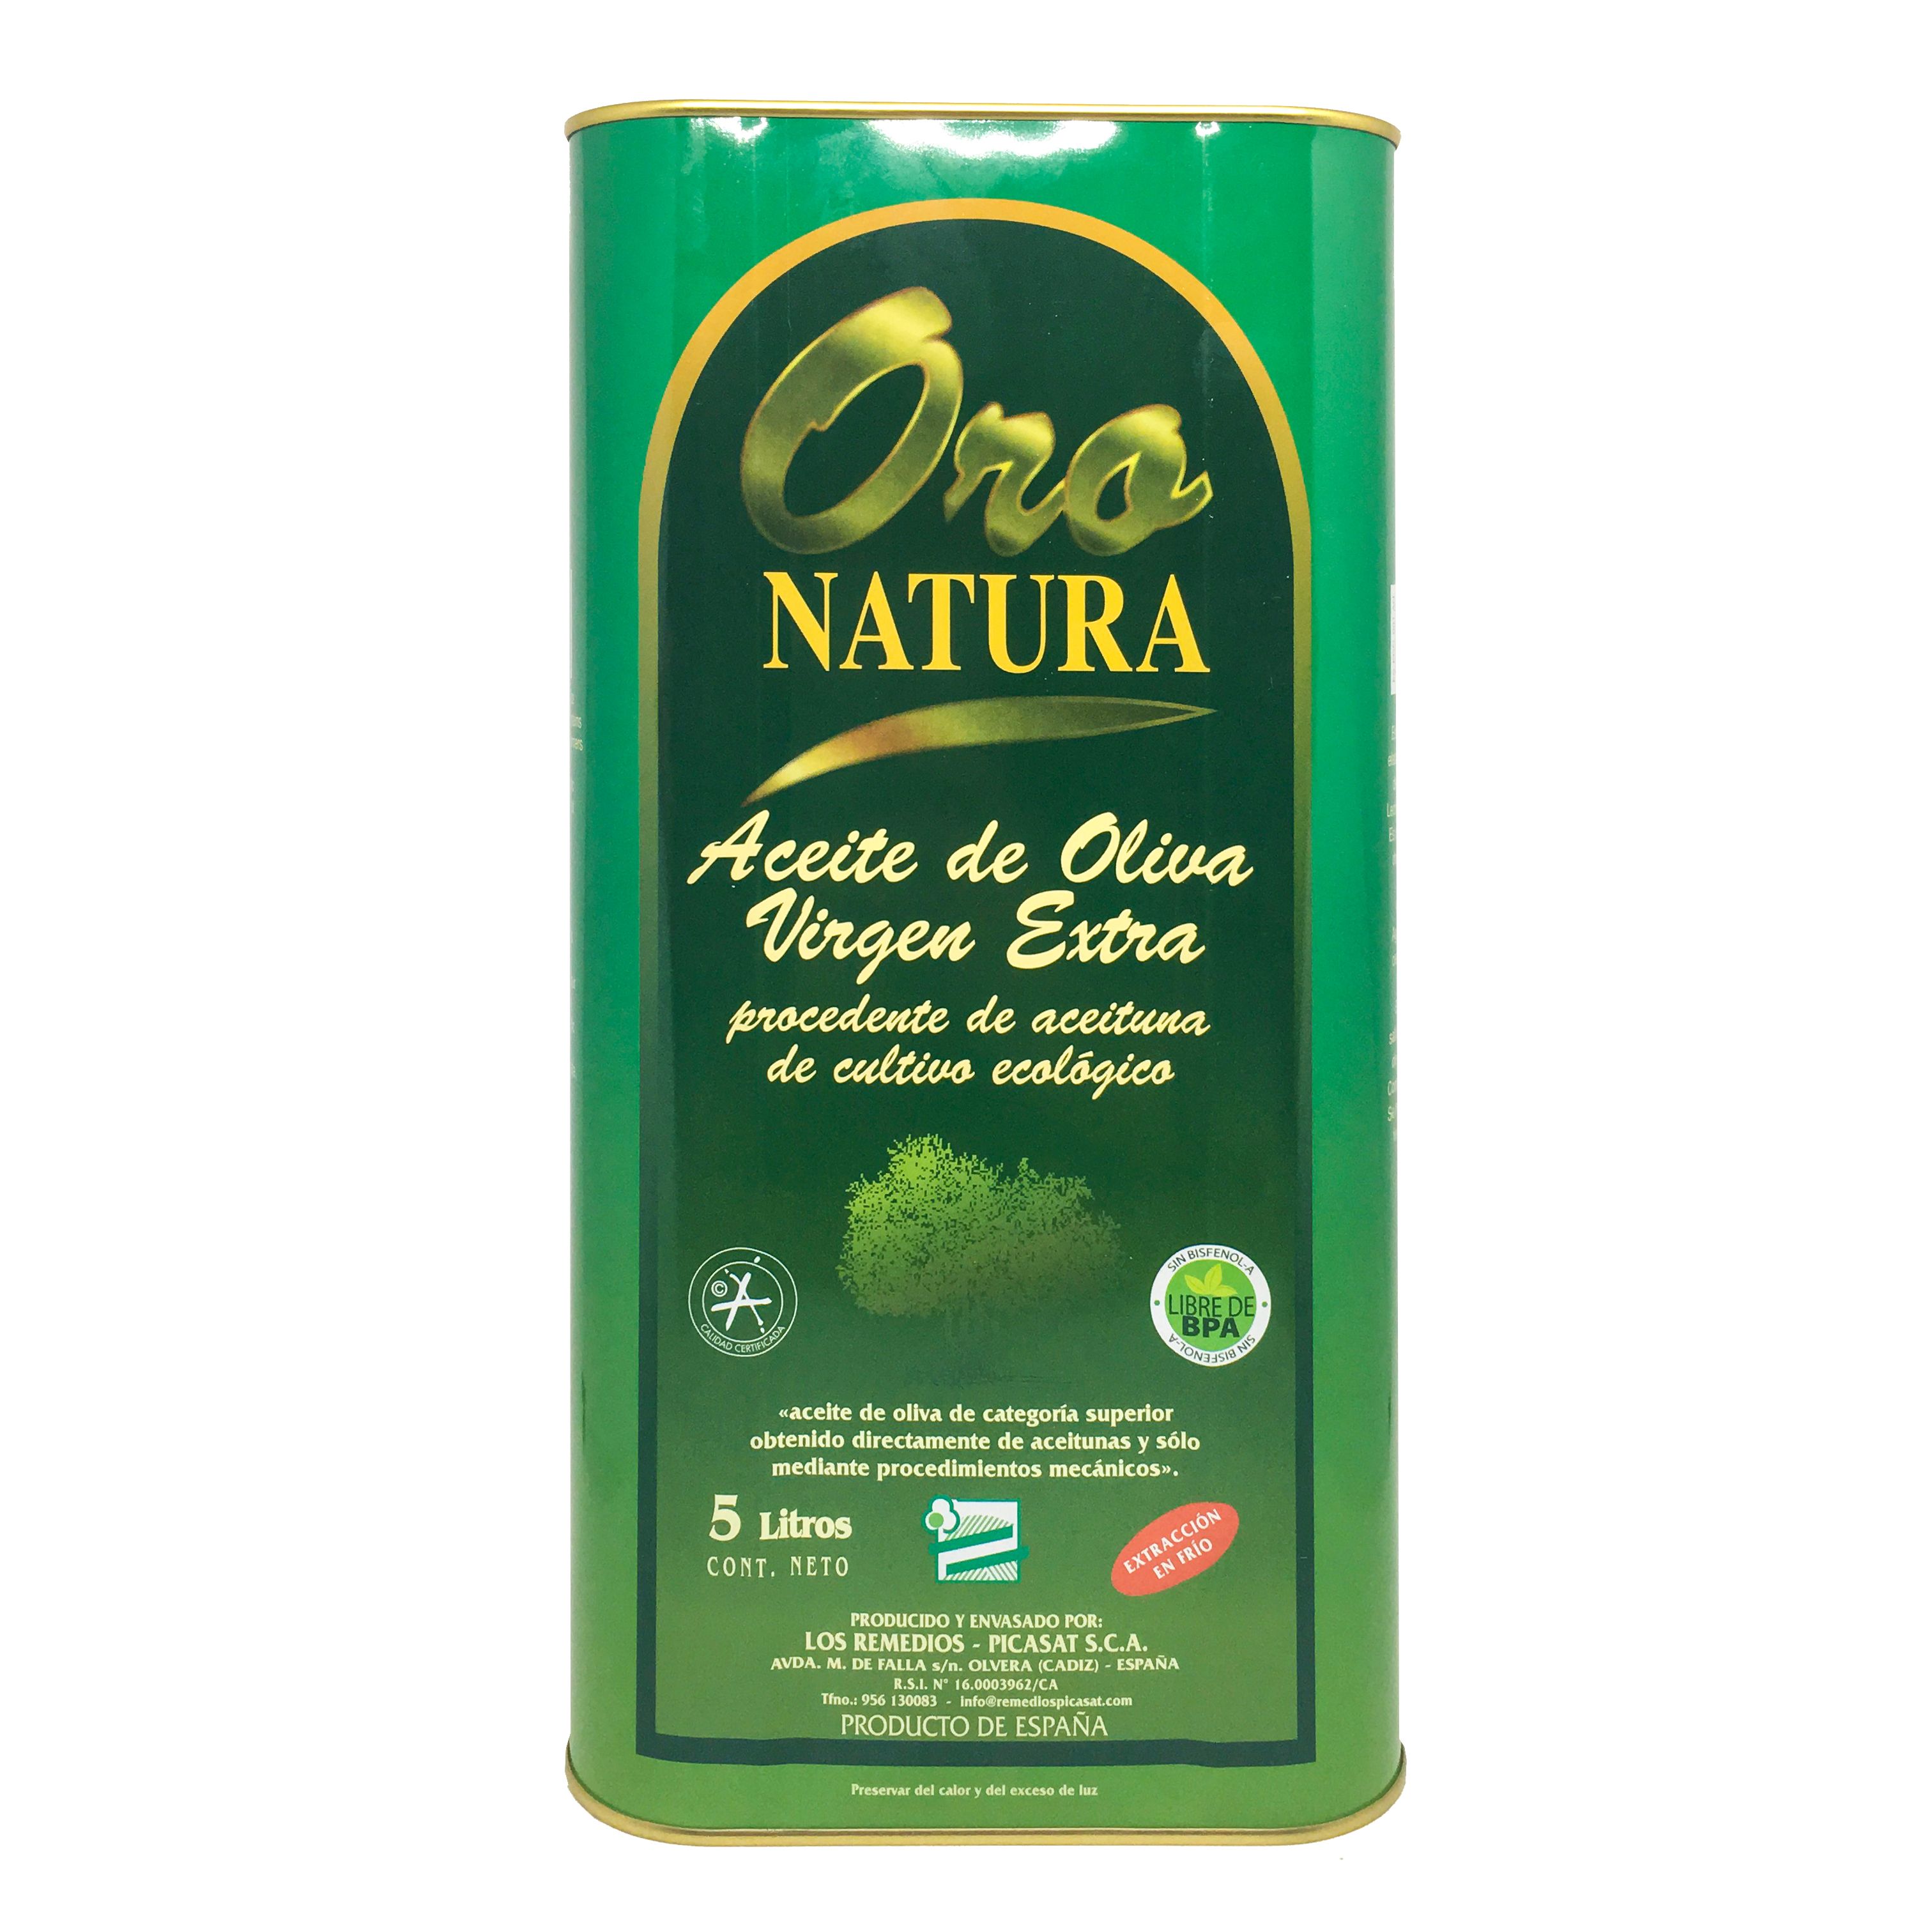 Aceite Ecológico Oro Natura 5L - Los Remedios Picasat